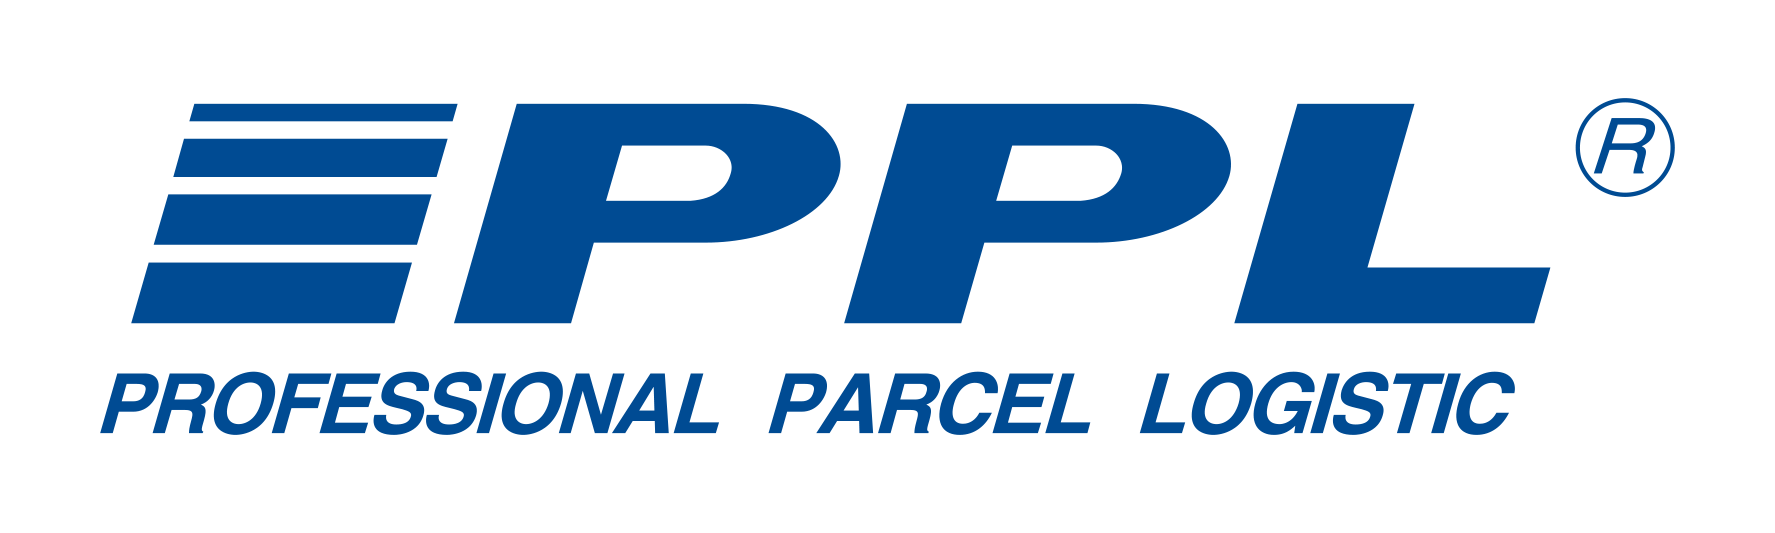 PPL - Professional Parcel Logistic